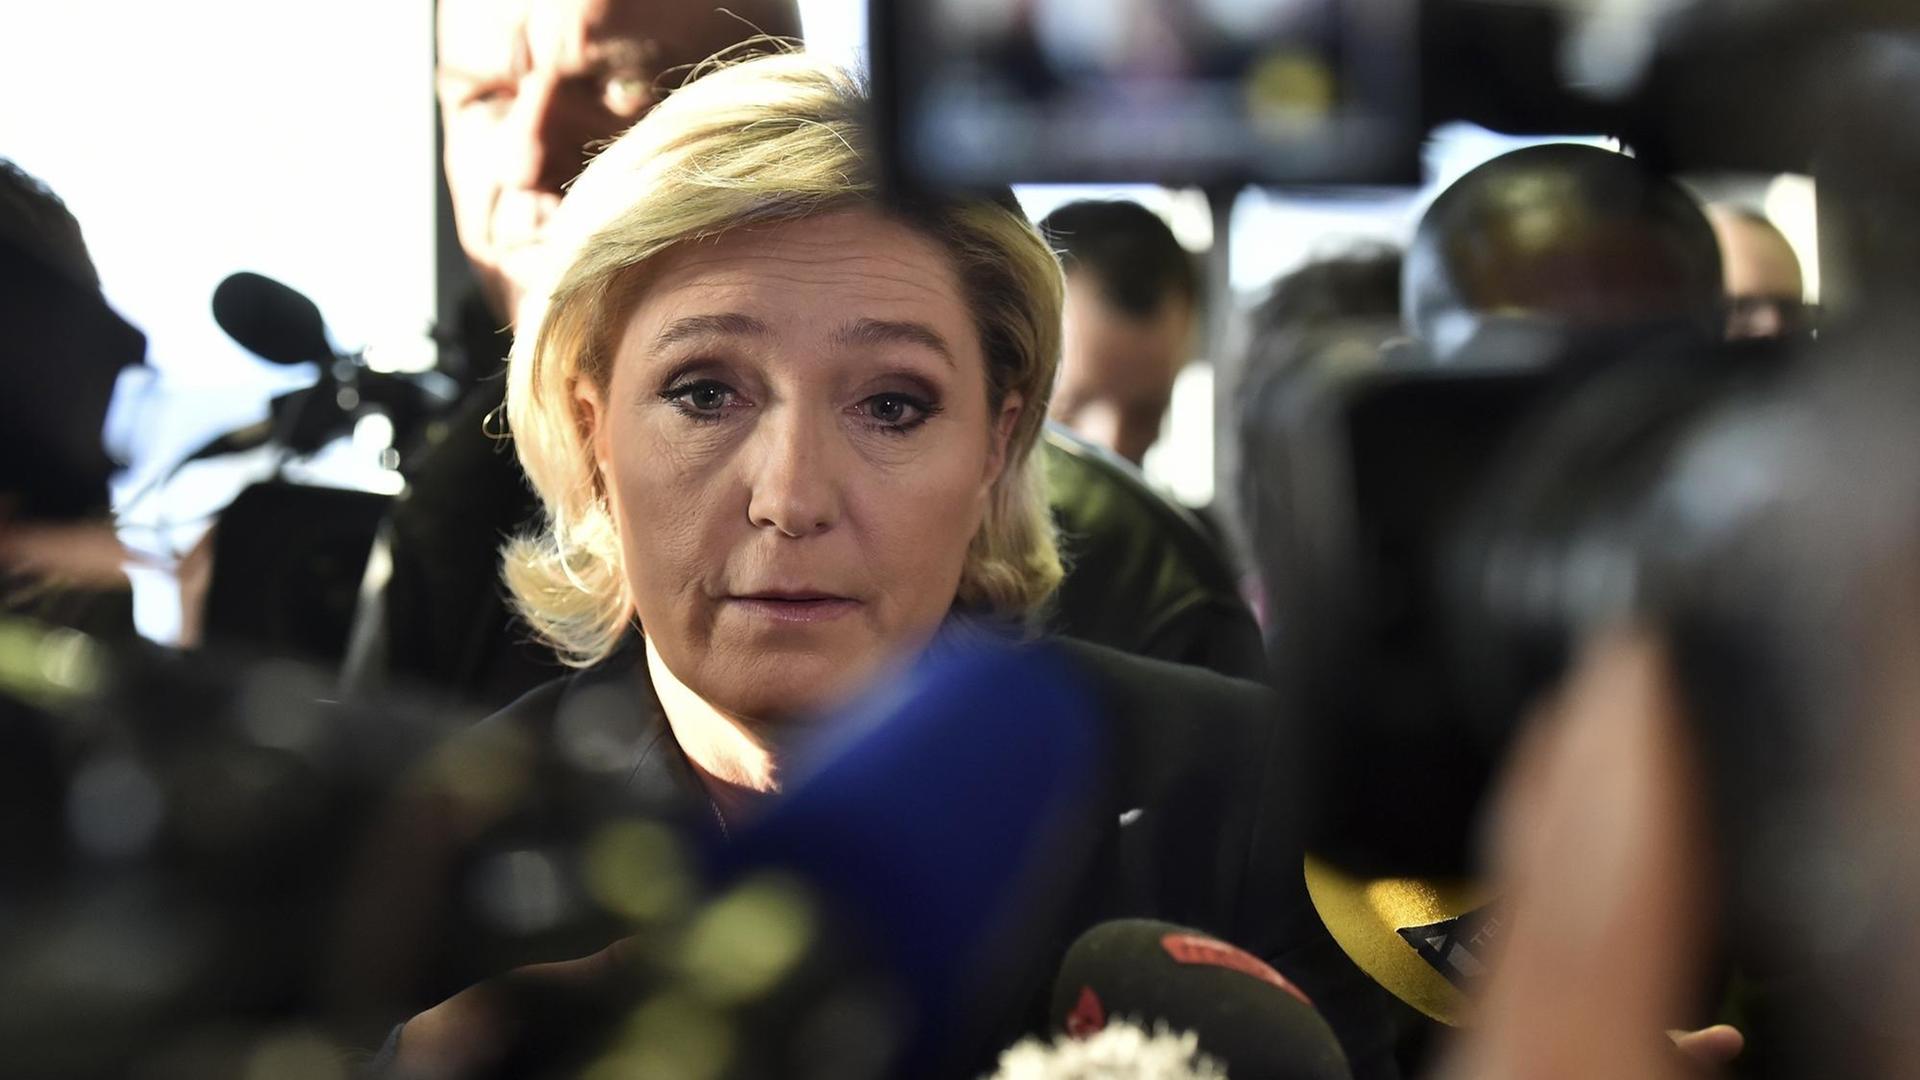 FN-Präsidentschaftskandidatin Marine Le Pen spricht mit Journalisten, während sie in Forbach das Unternehmen Fermap besucht, im Januar 2017